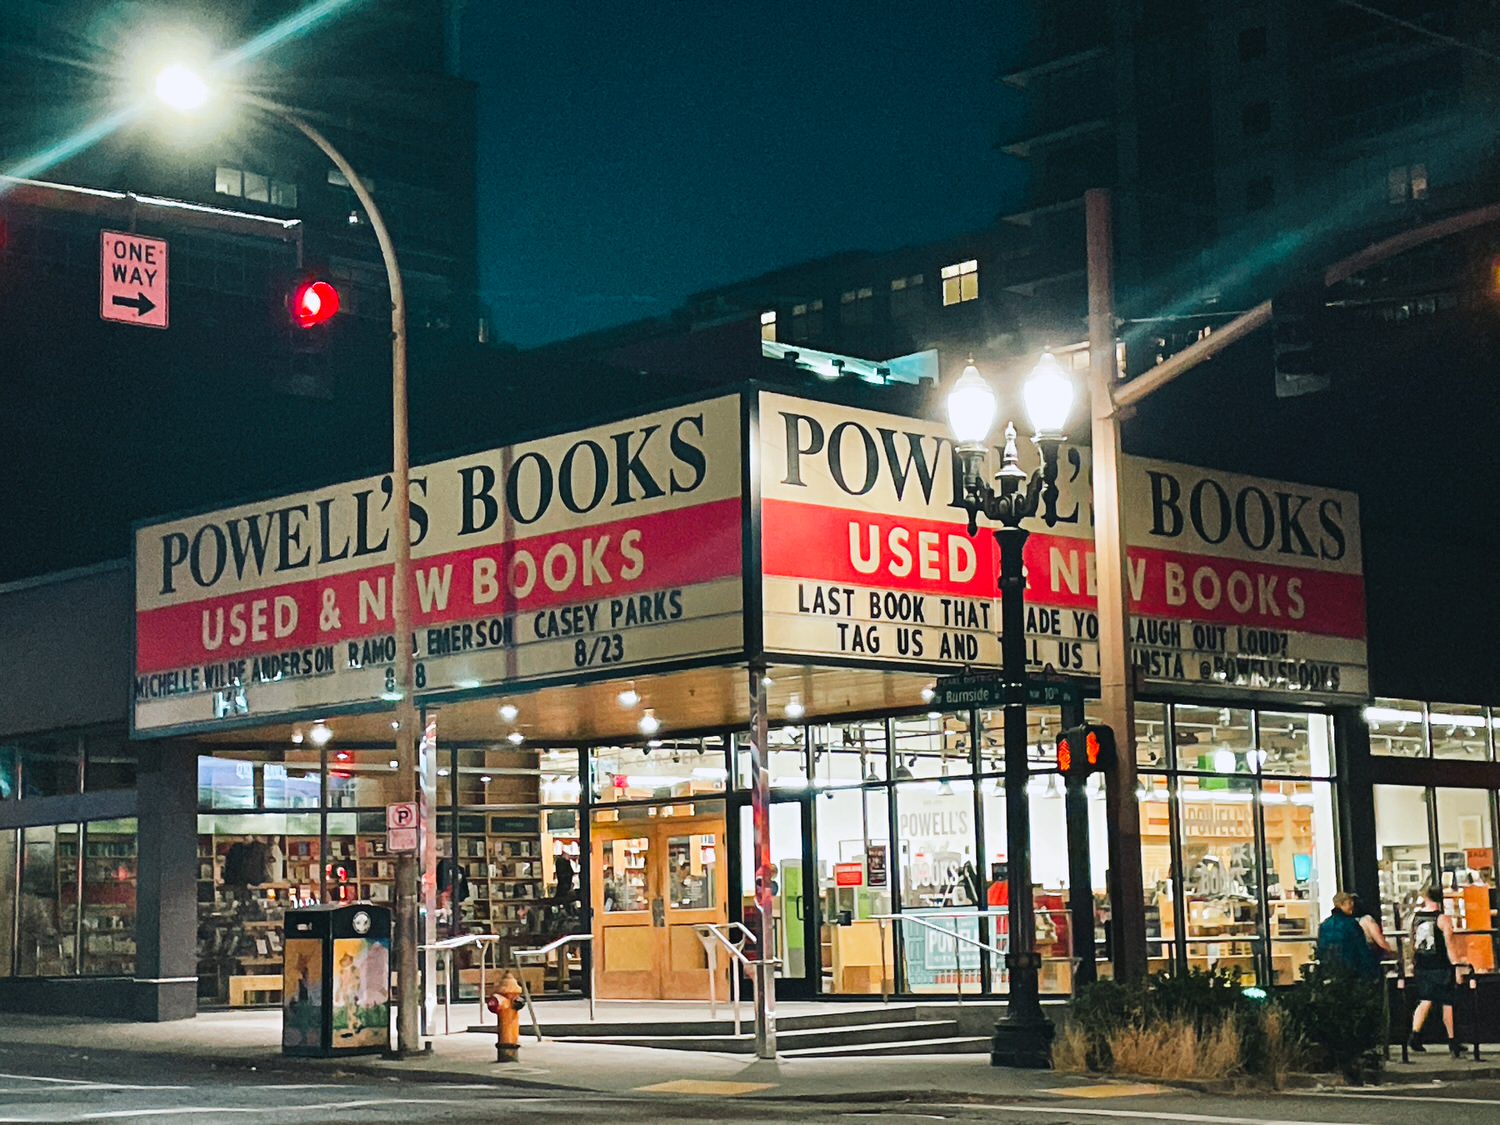 2023波特蘭 Portland15個必去景點
Pioneer Courthouse
全球最大獨立書店 Powell’s Books 